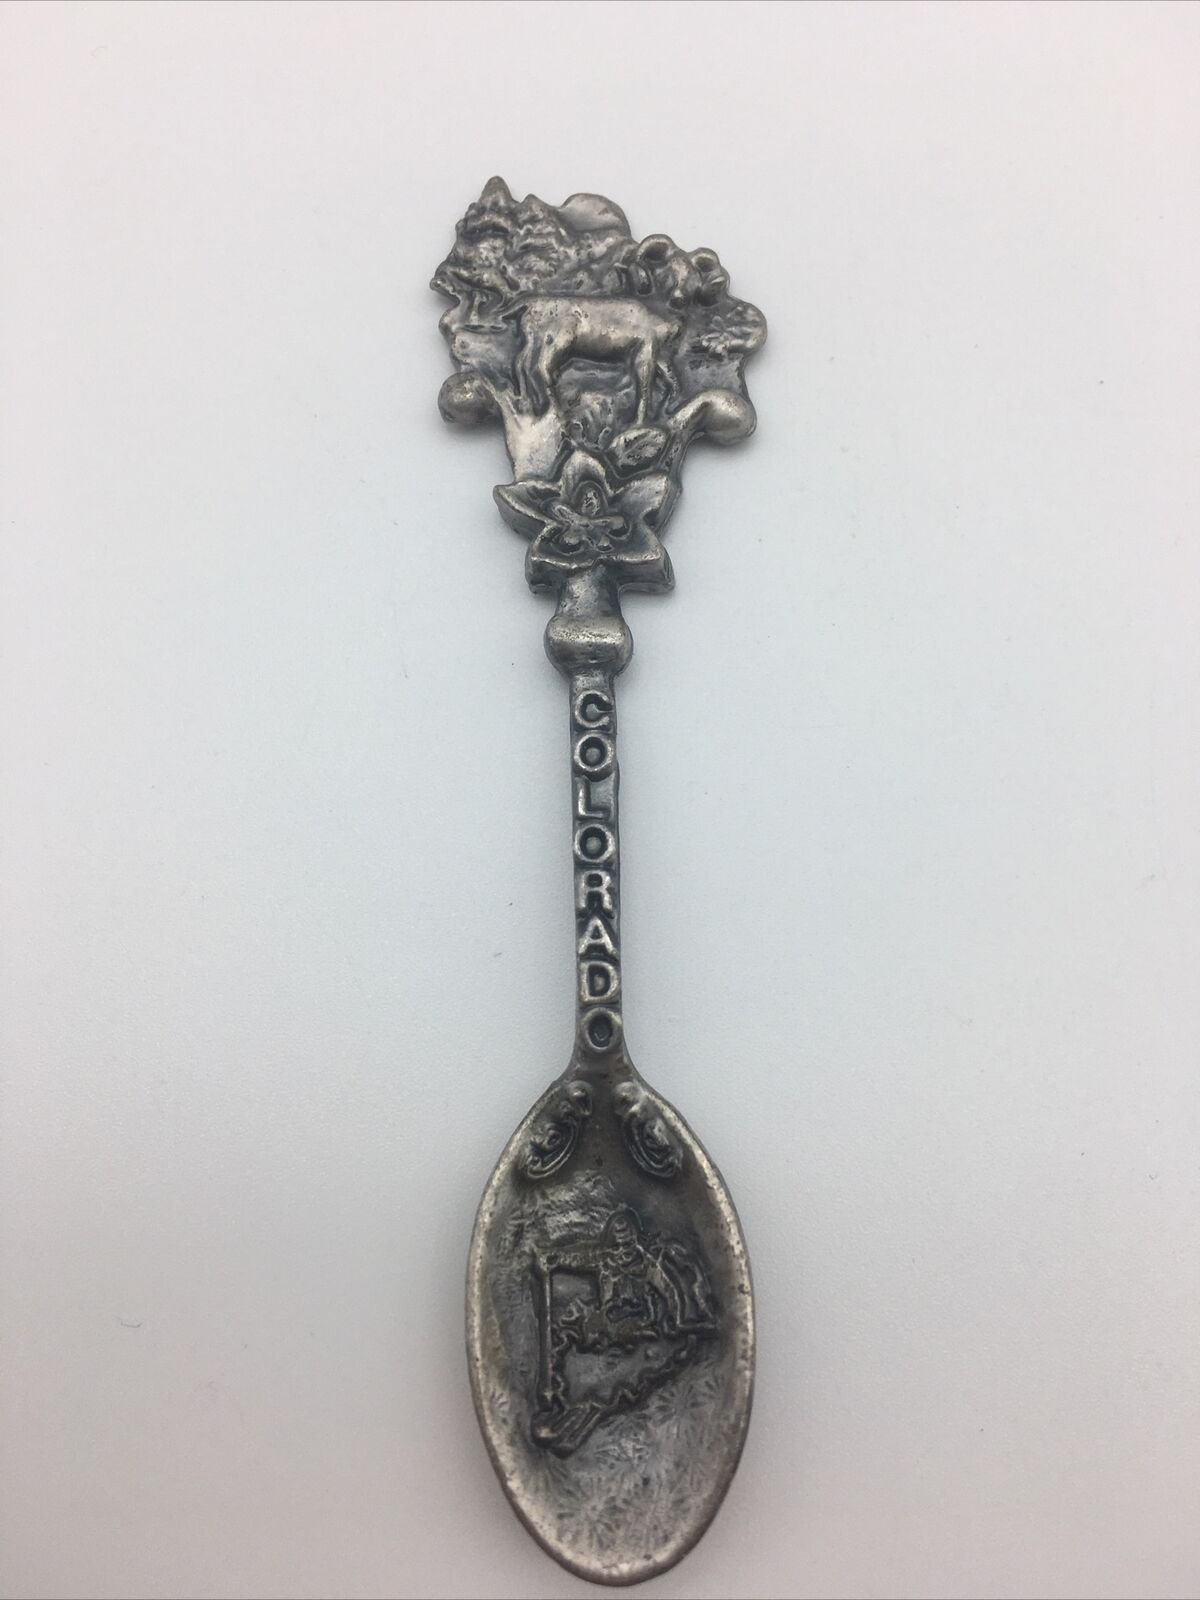 Collectible Decorative Souvenir Spoon - Colorado CO USA